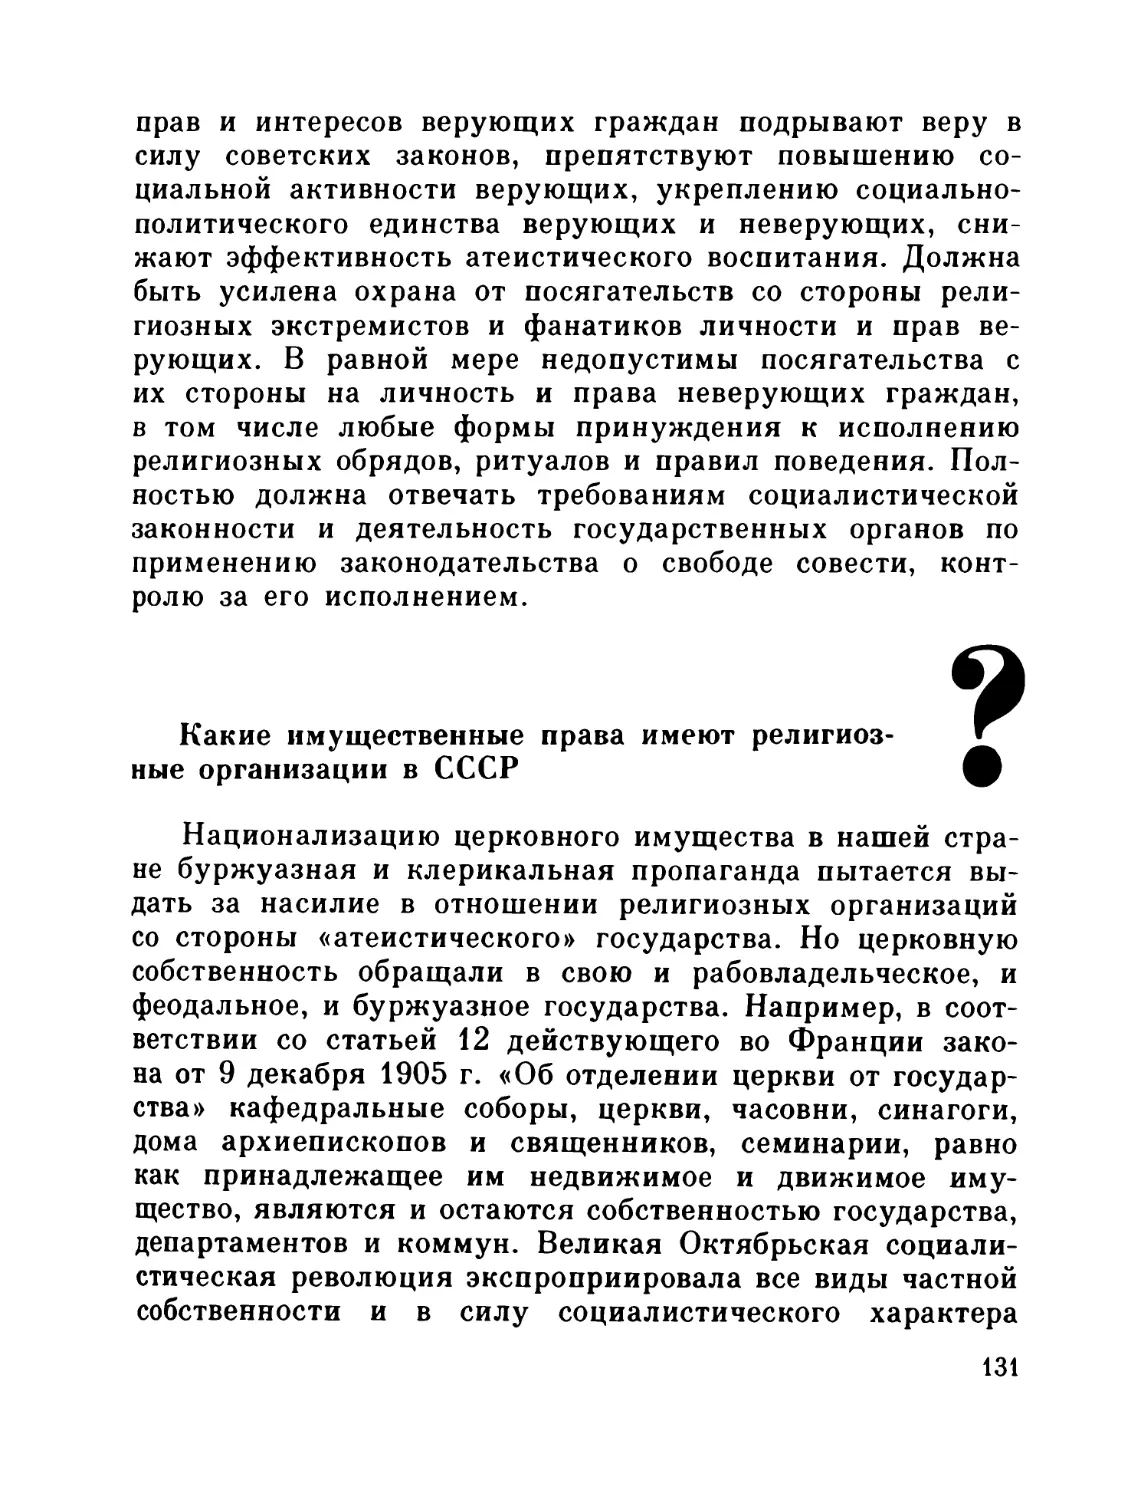 Какие имущественные права имеют религиозные организации в СССР